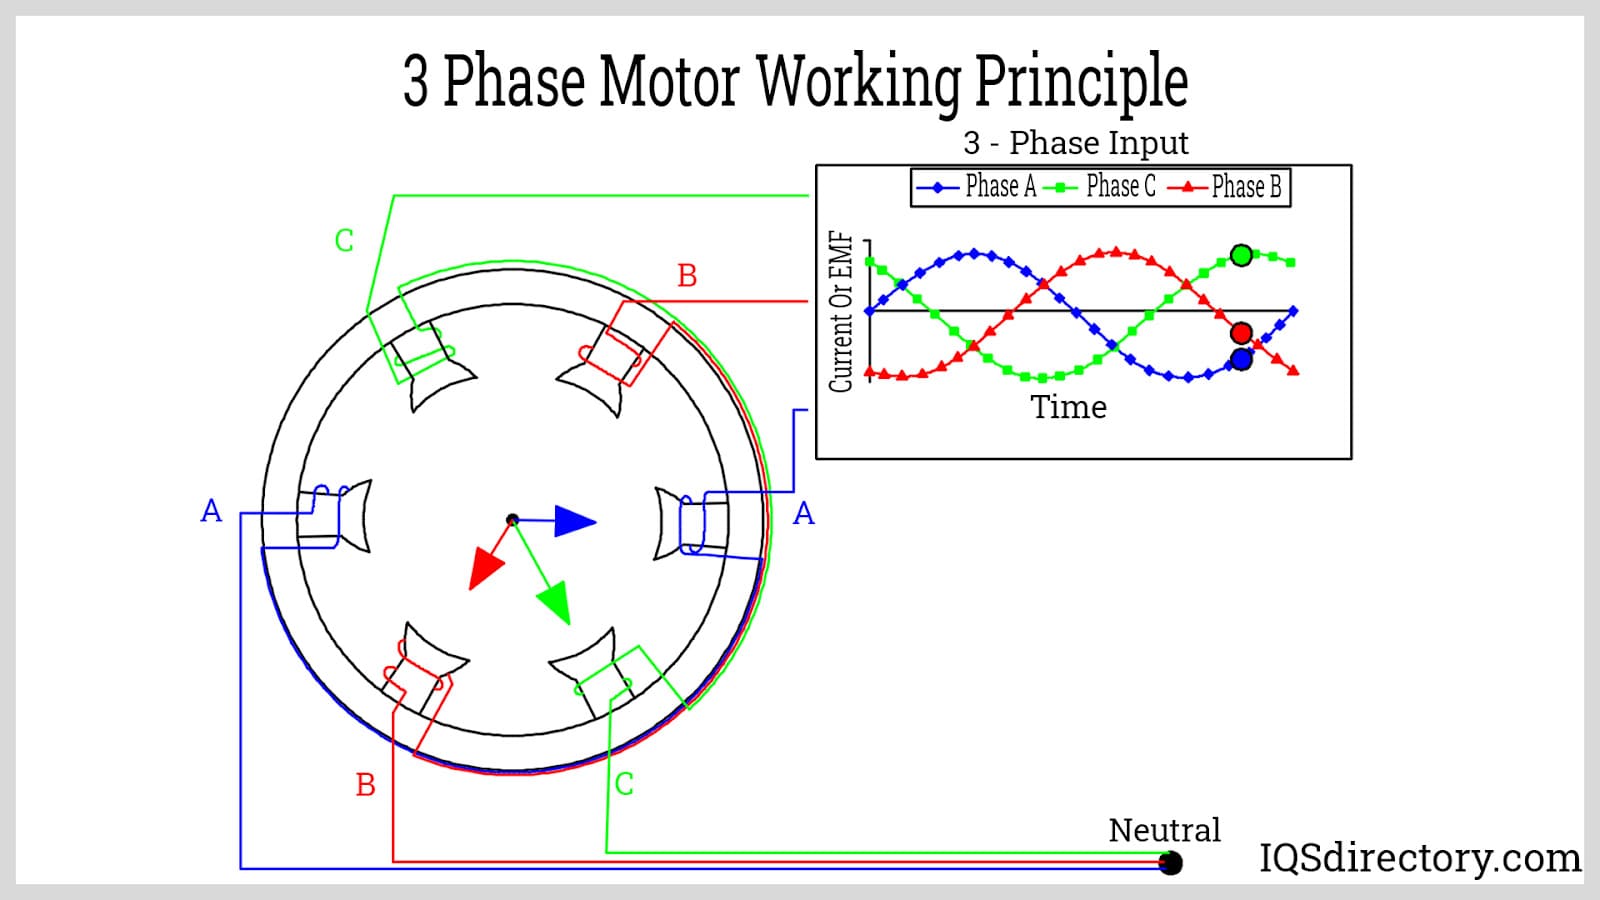 3 Phase Motor Working Principle